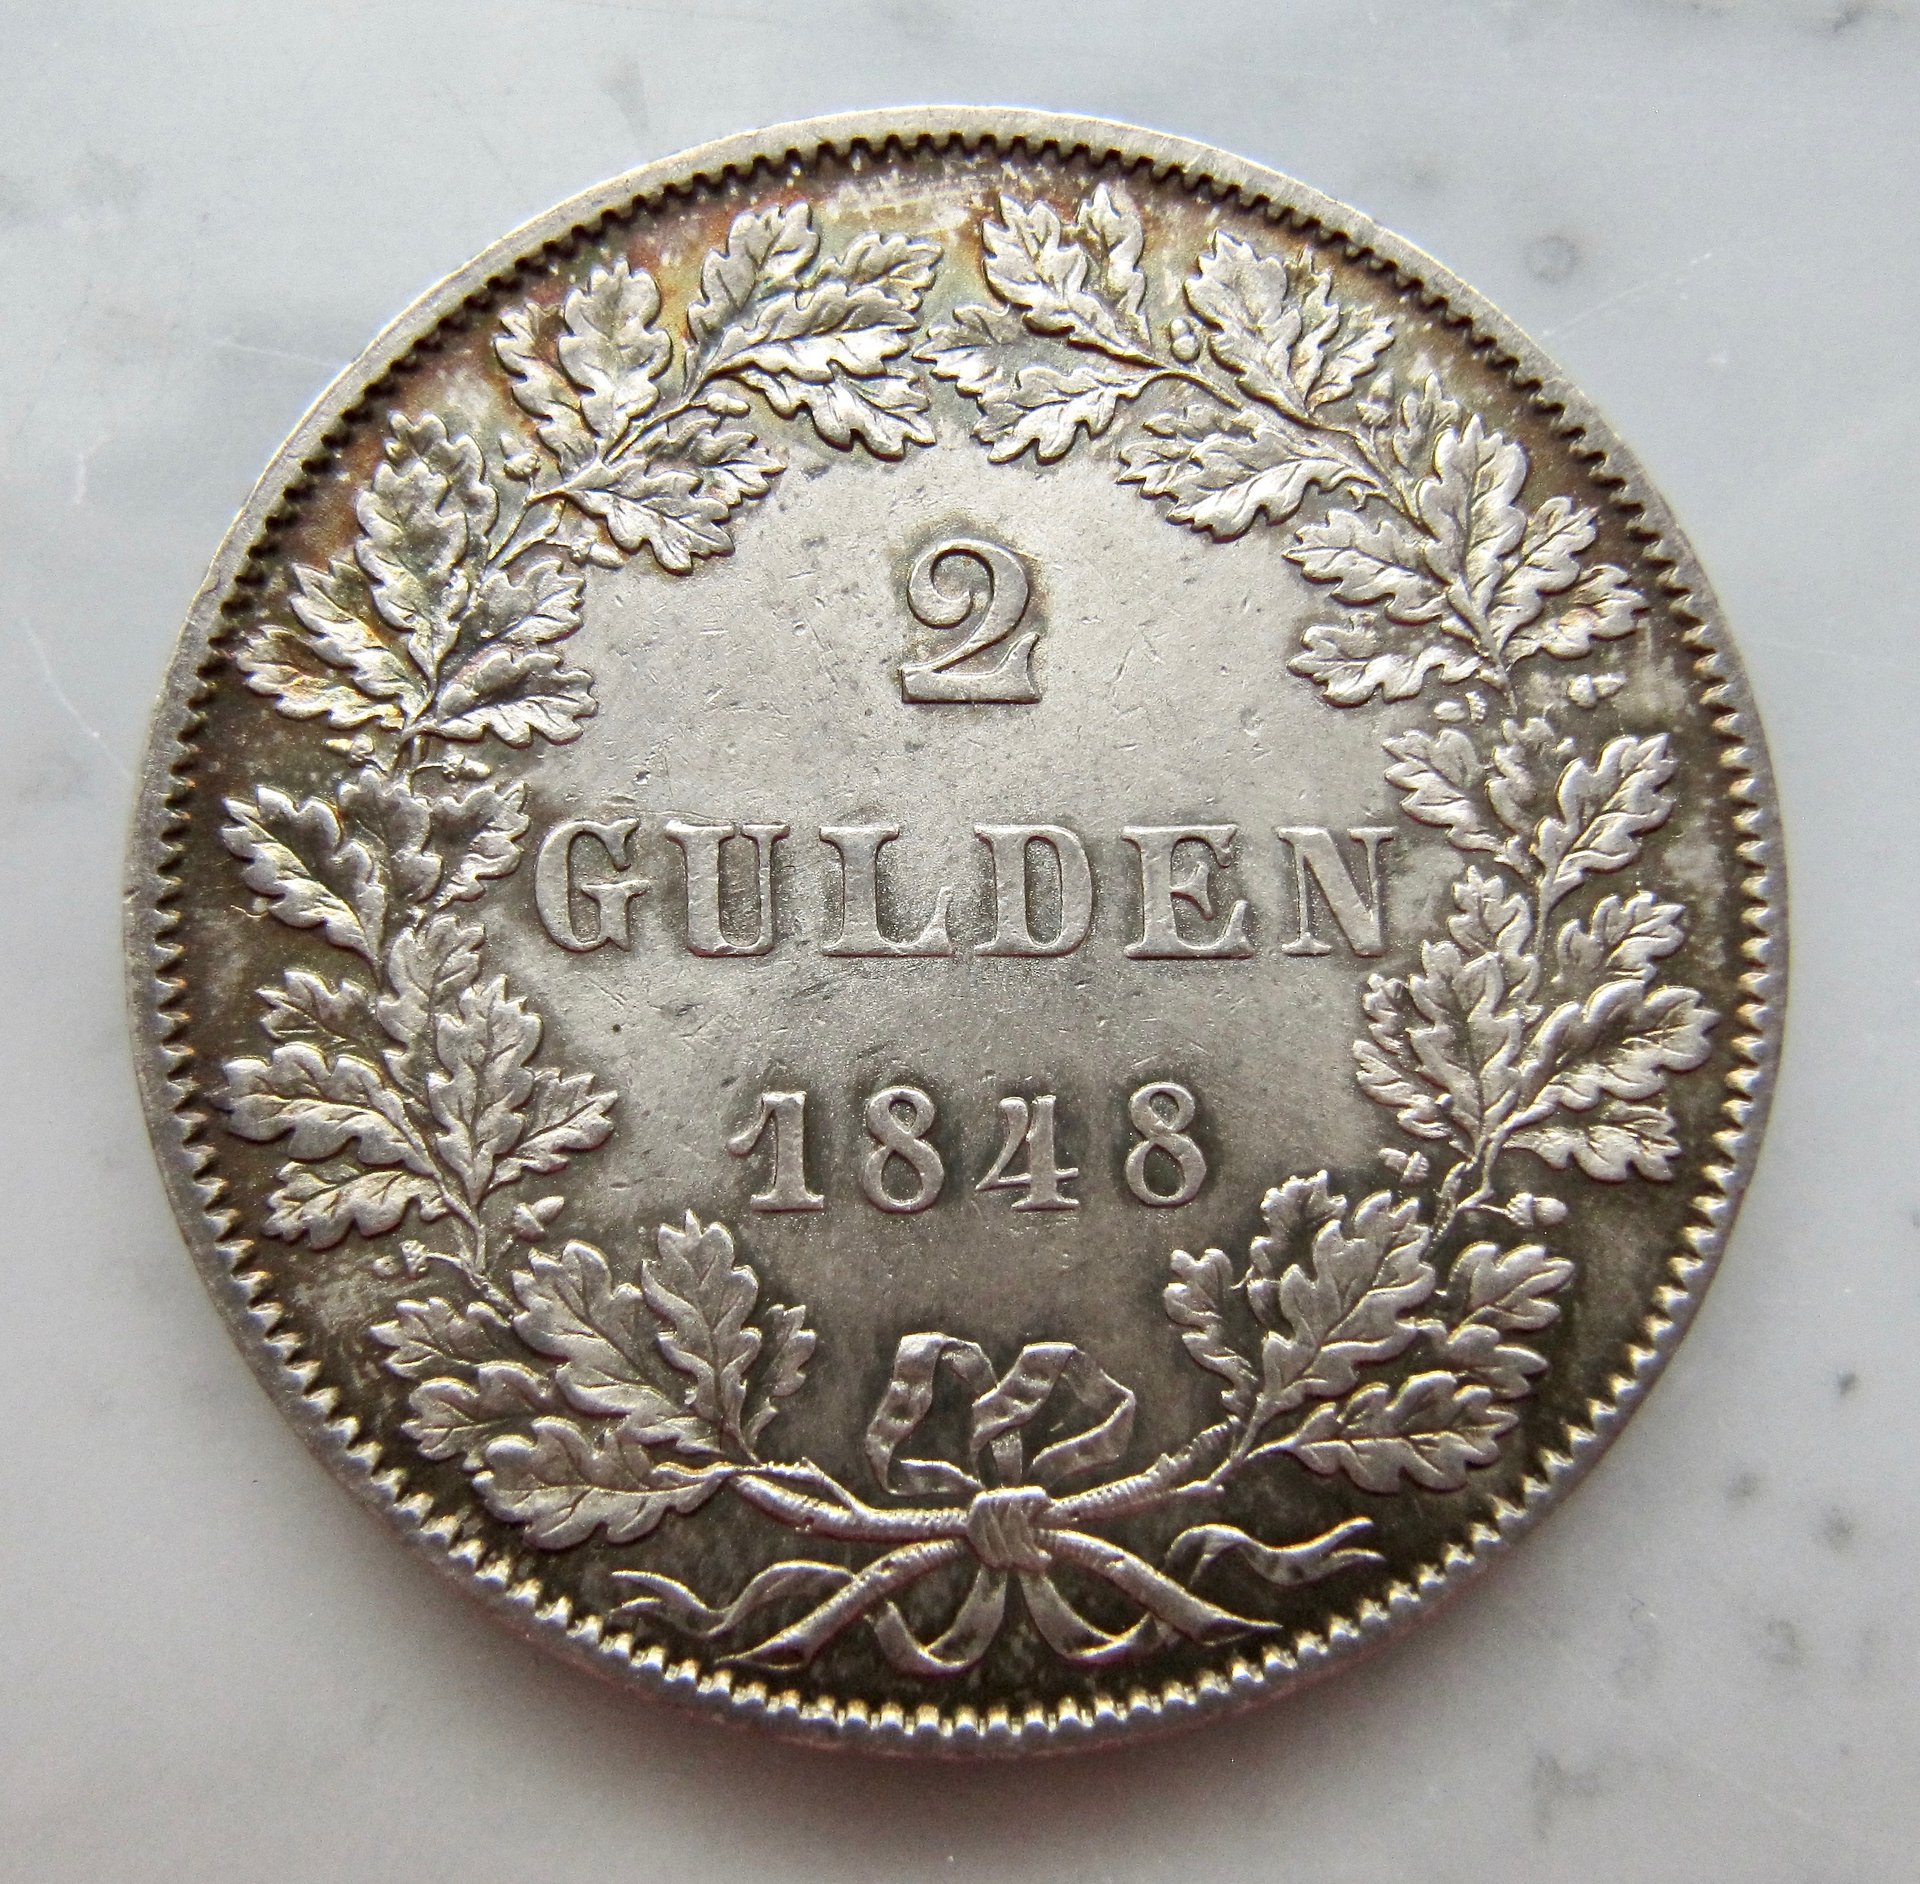 Frankfurt Zwie gulden 1848 obv1 N - better - 1.jpg